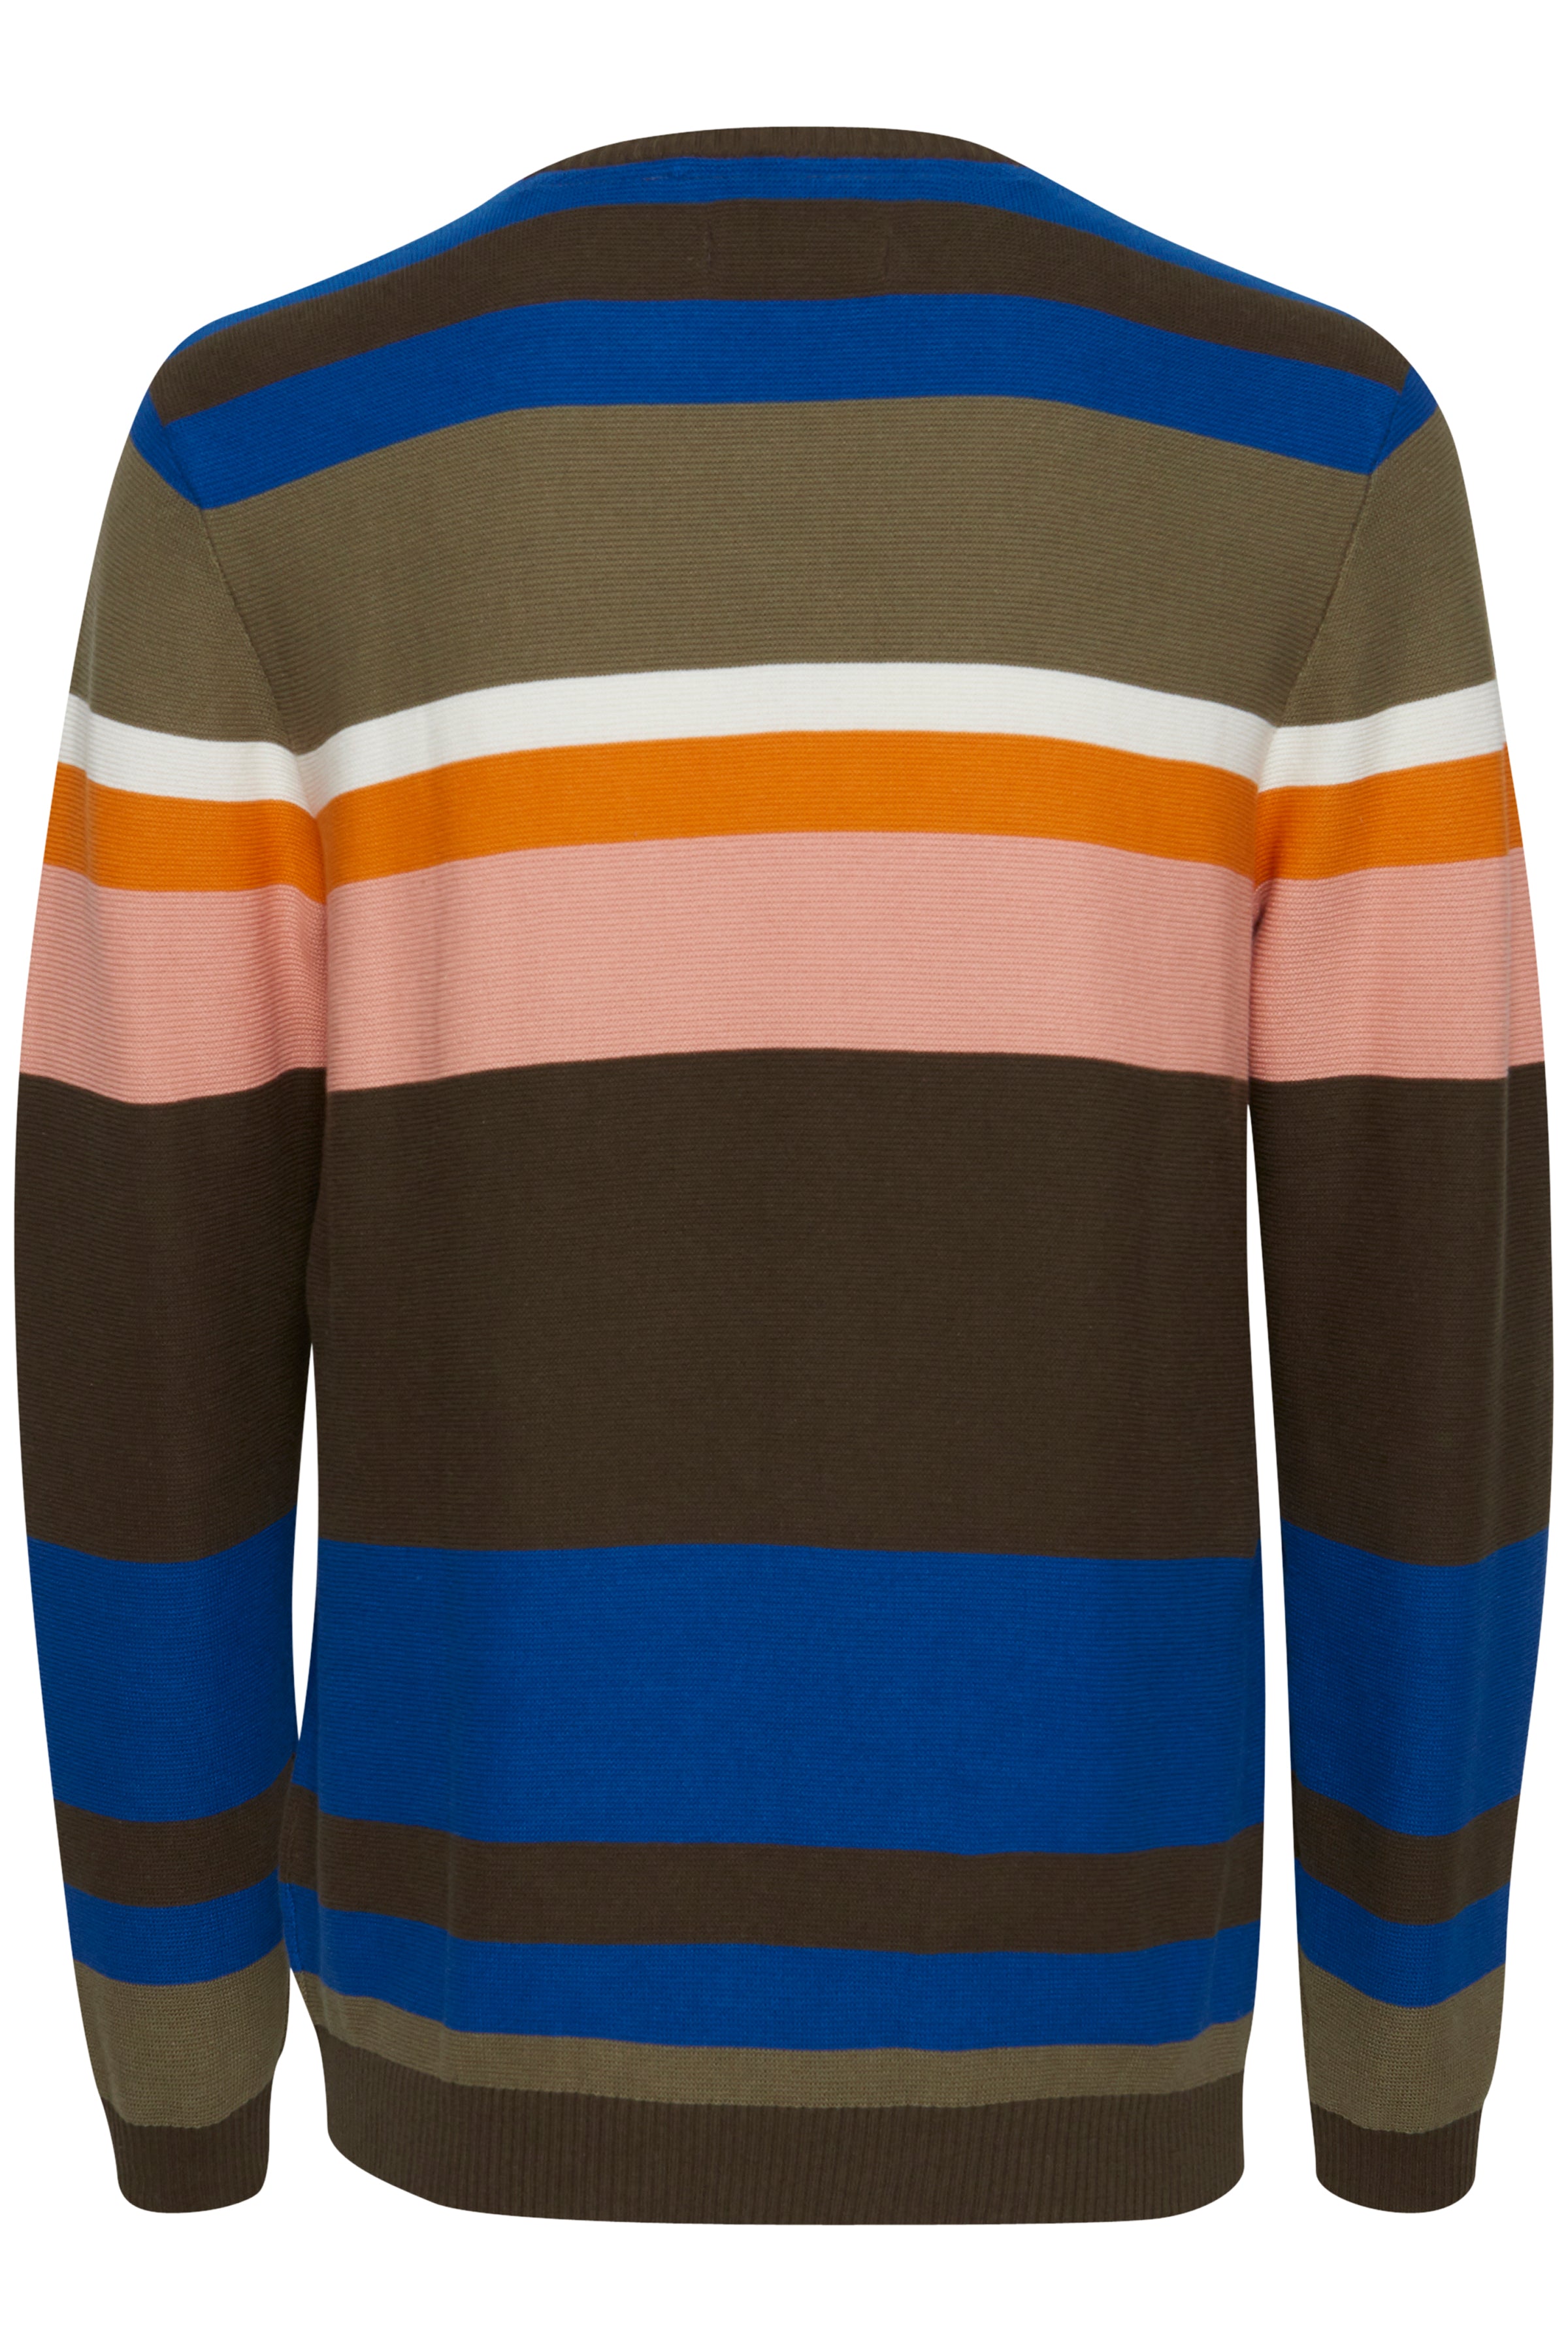 Wide Stripe Retro Cotton Sweater